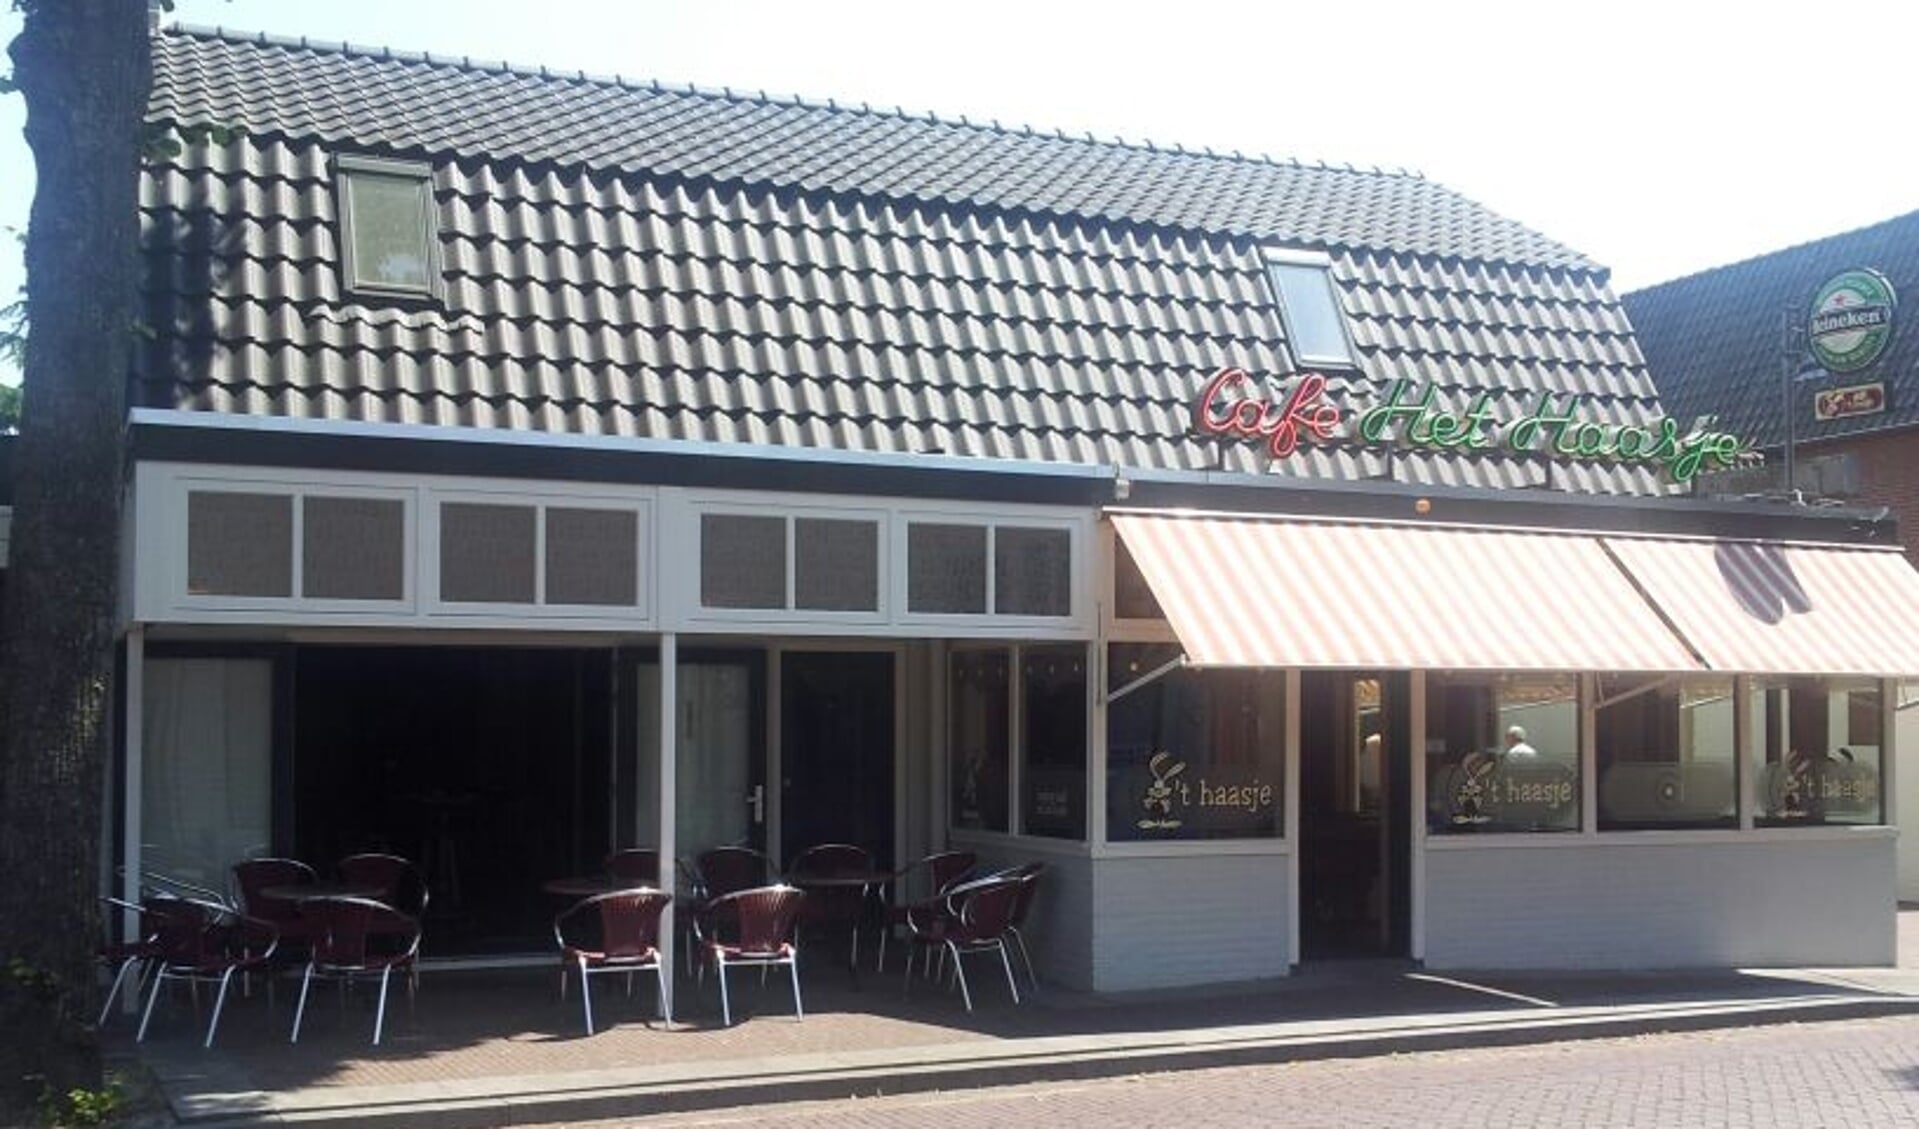 Café-zaal 't Haasje in Geffen staat te koop.